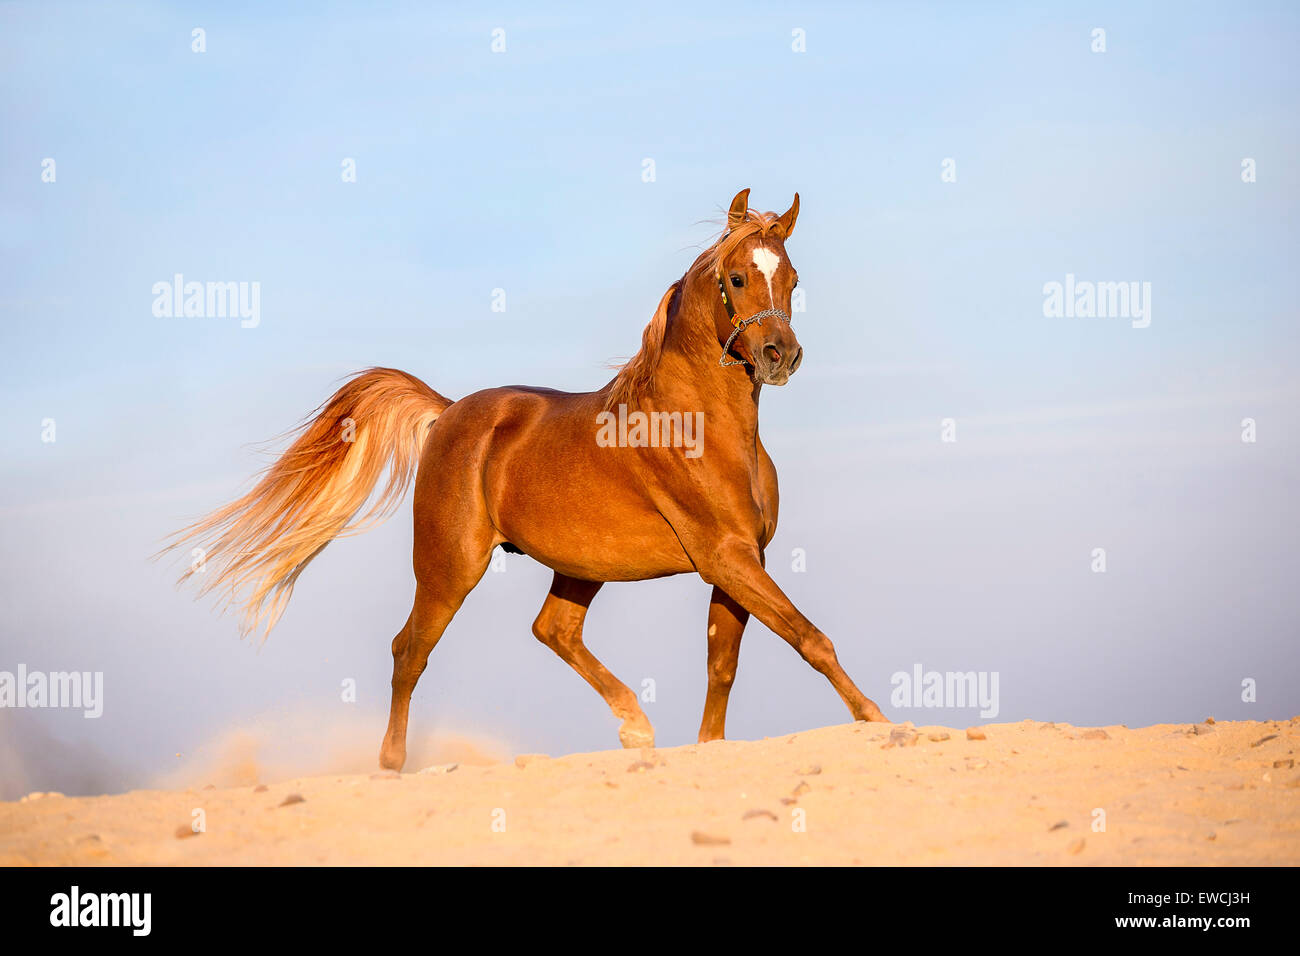 Arabian Horse. Chestnut stallion trotting in the desert. Egypt Stock Photo